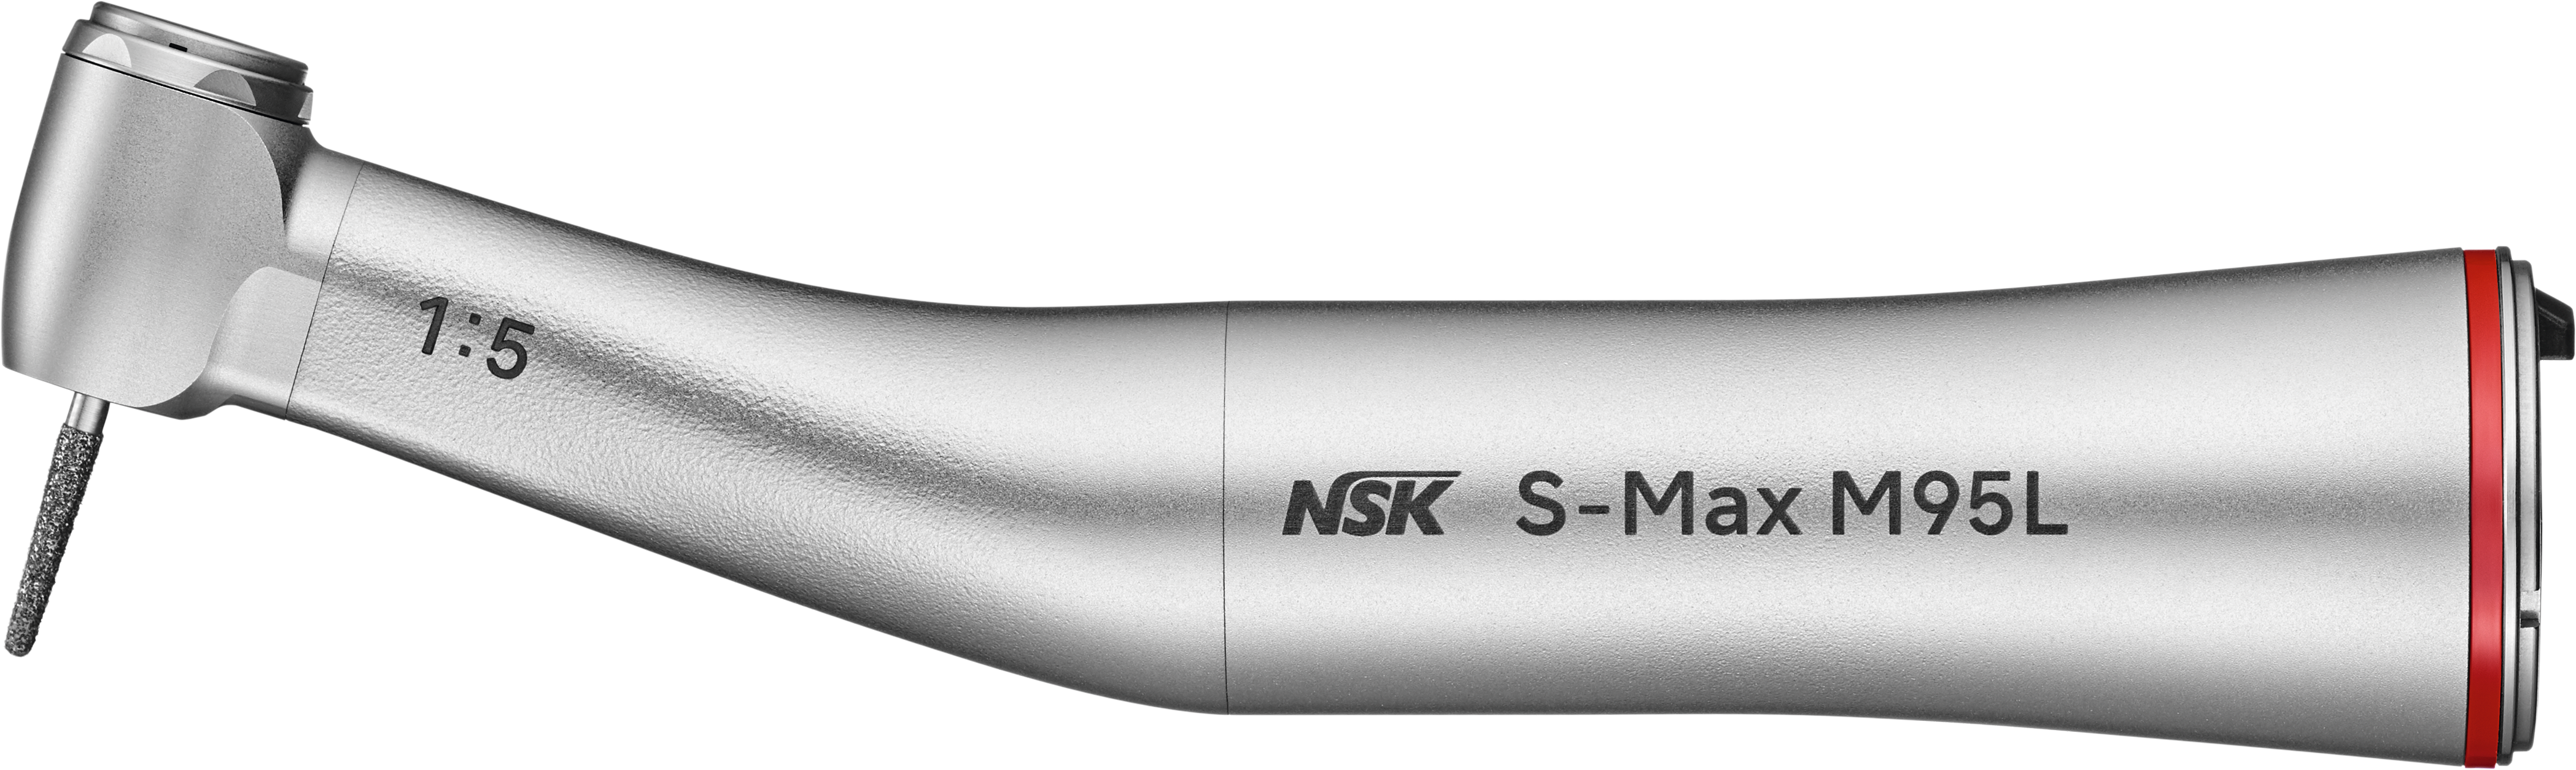 NSK S-Max M95L, Schnelllauf-Winkelstück mit Licht, rot 1:5